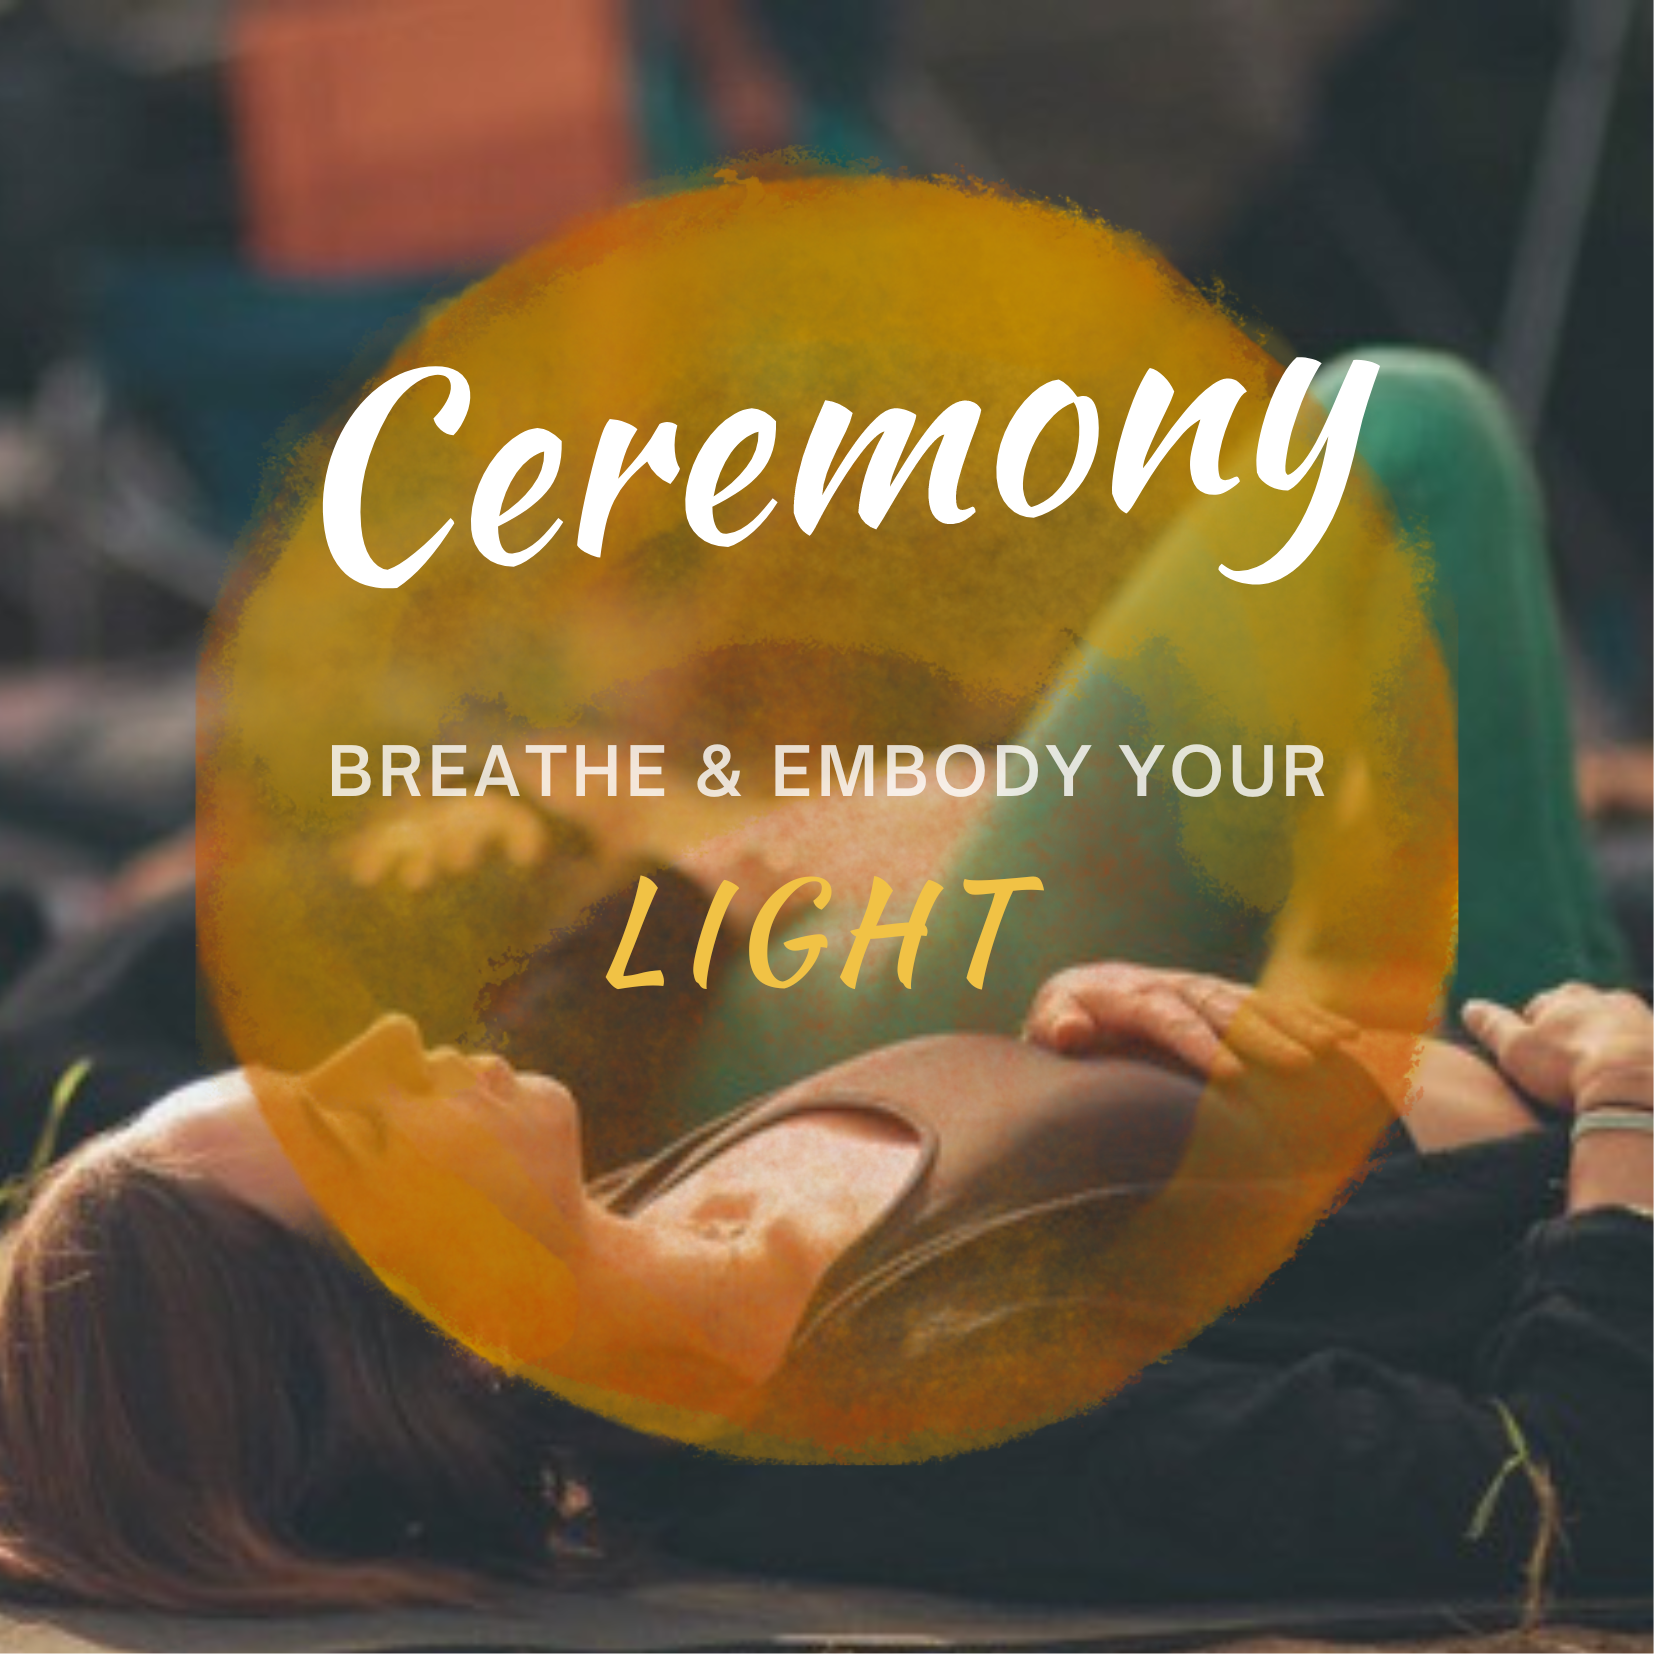 Breathwork ceremony, 'Breathe & embody your light'